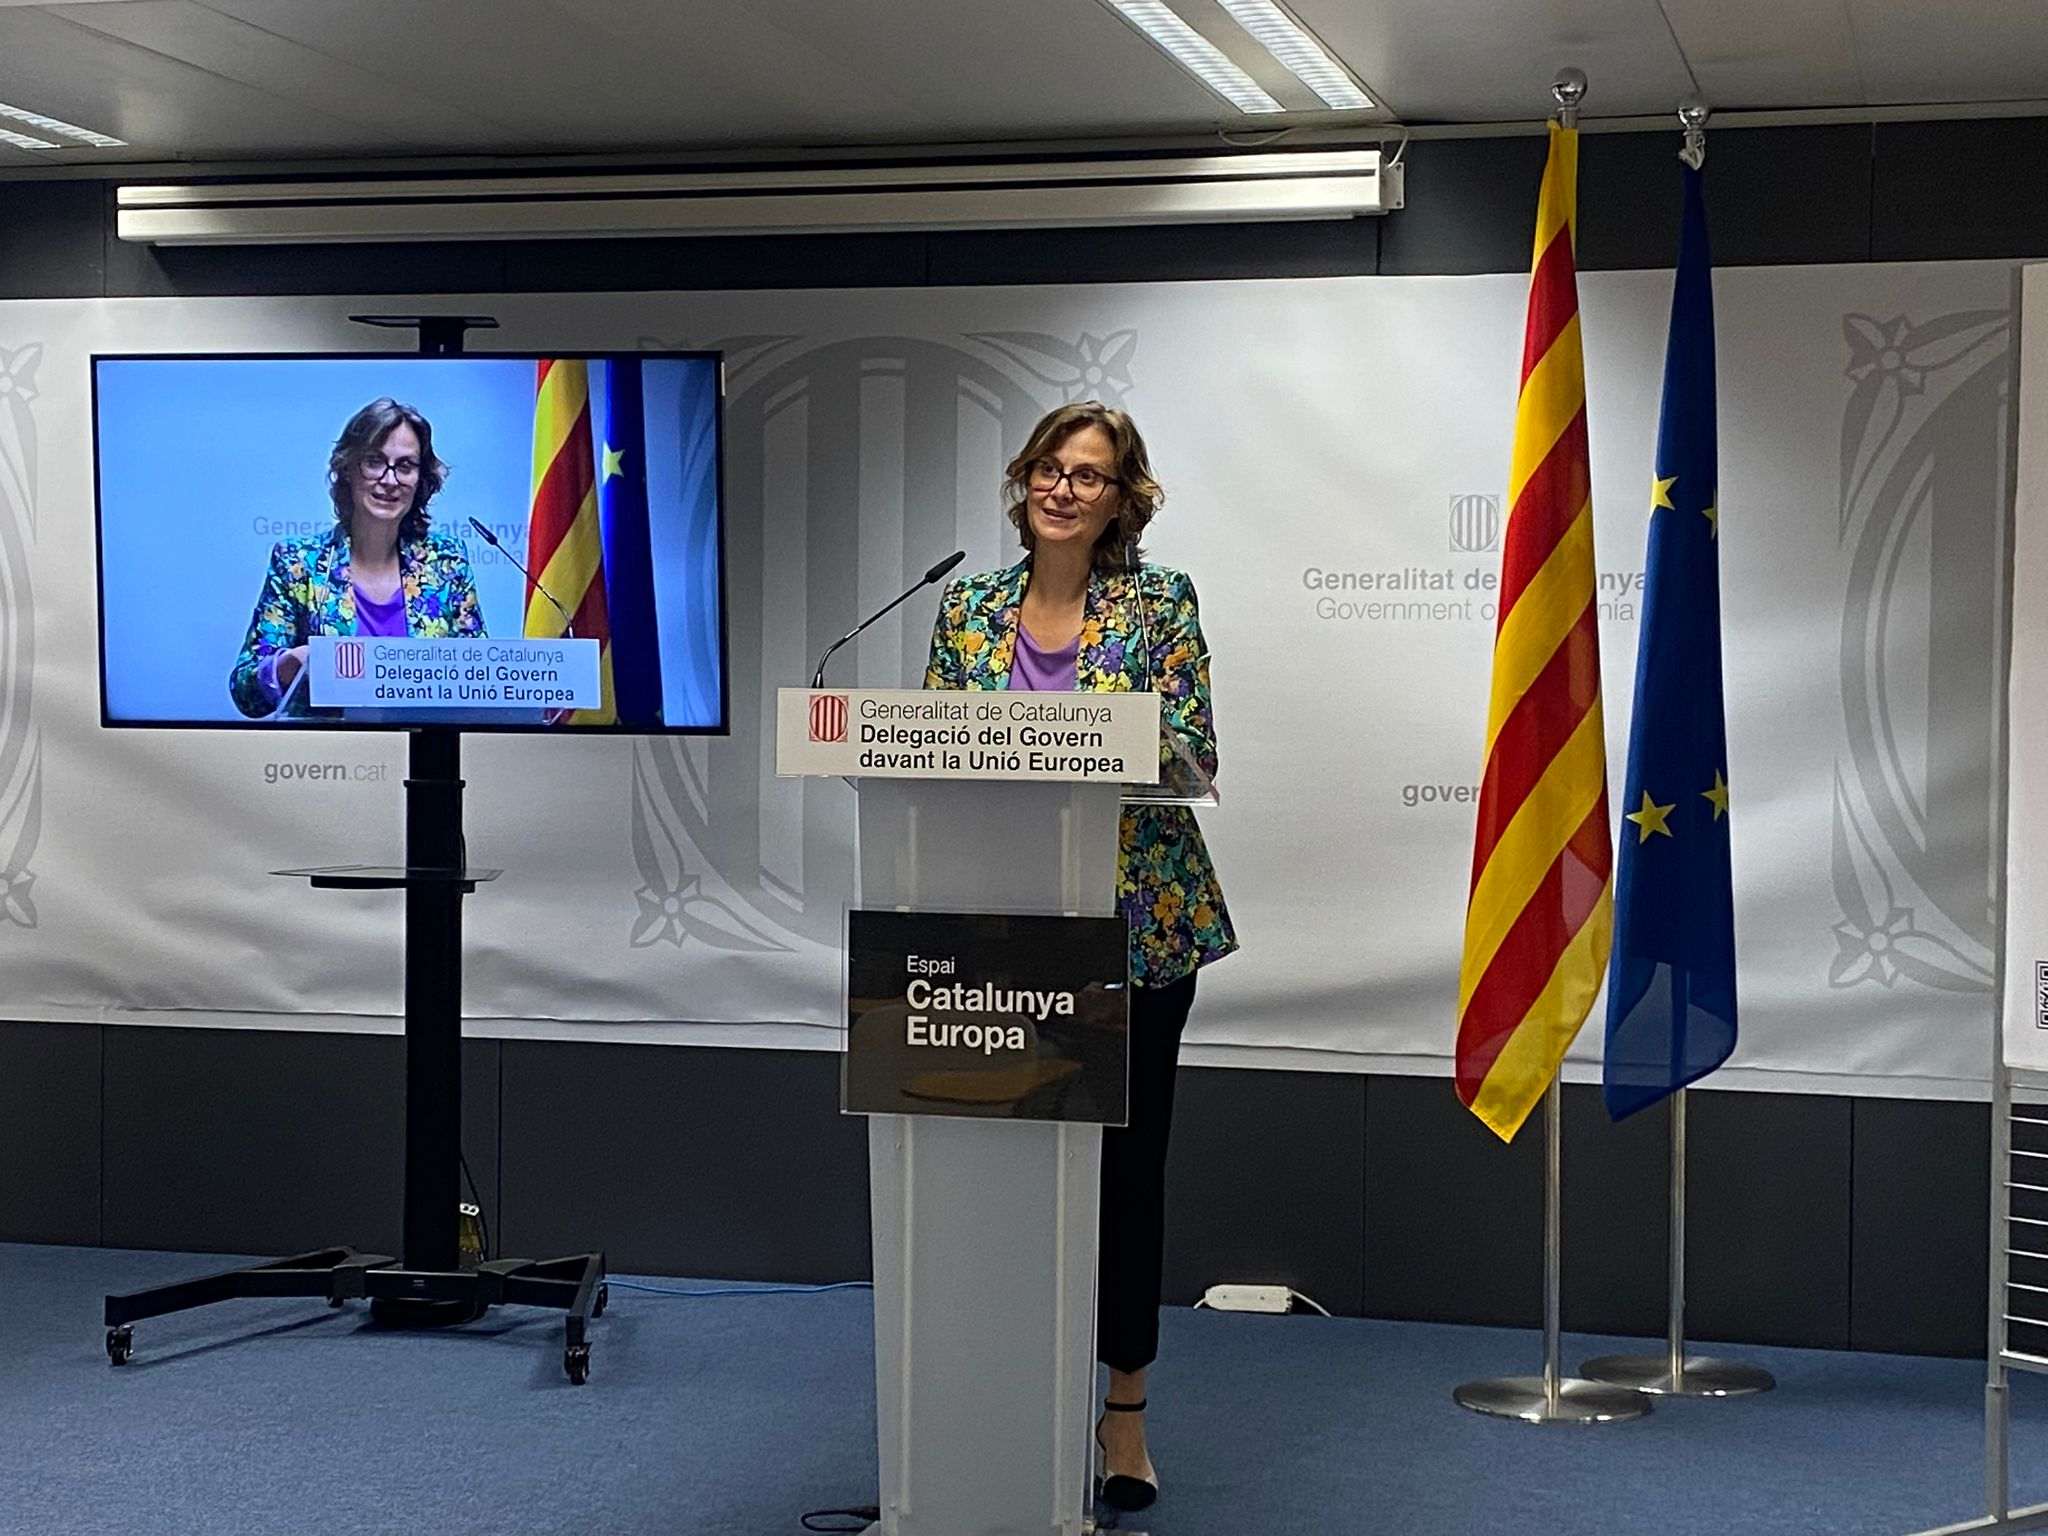 Amb aquesta campanya el Govern defensa als carrers i mitjans d'Europa l'oficialitat del català